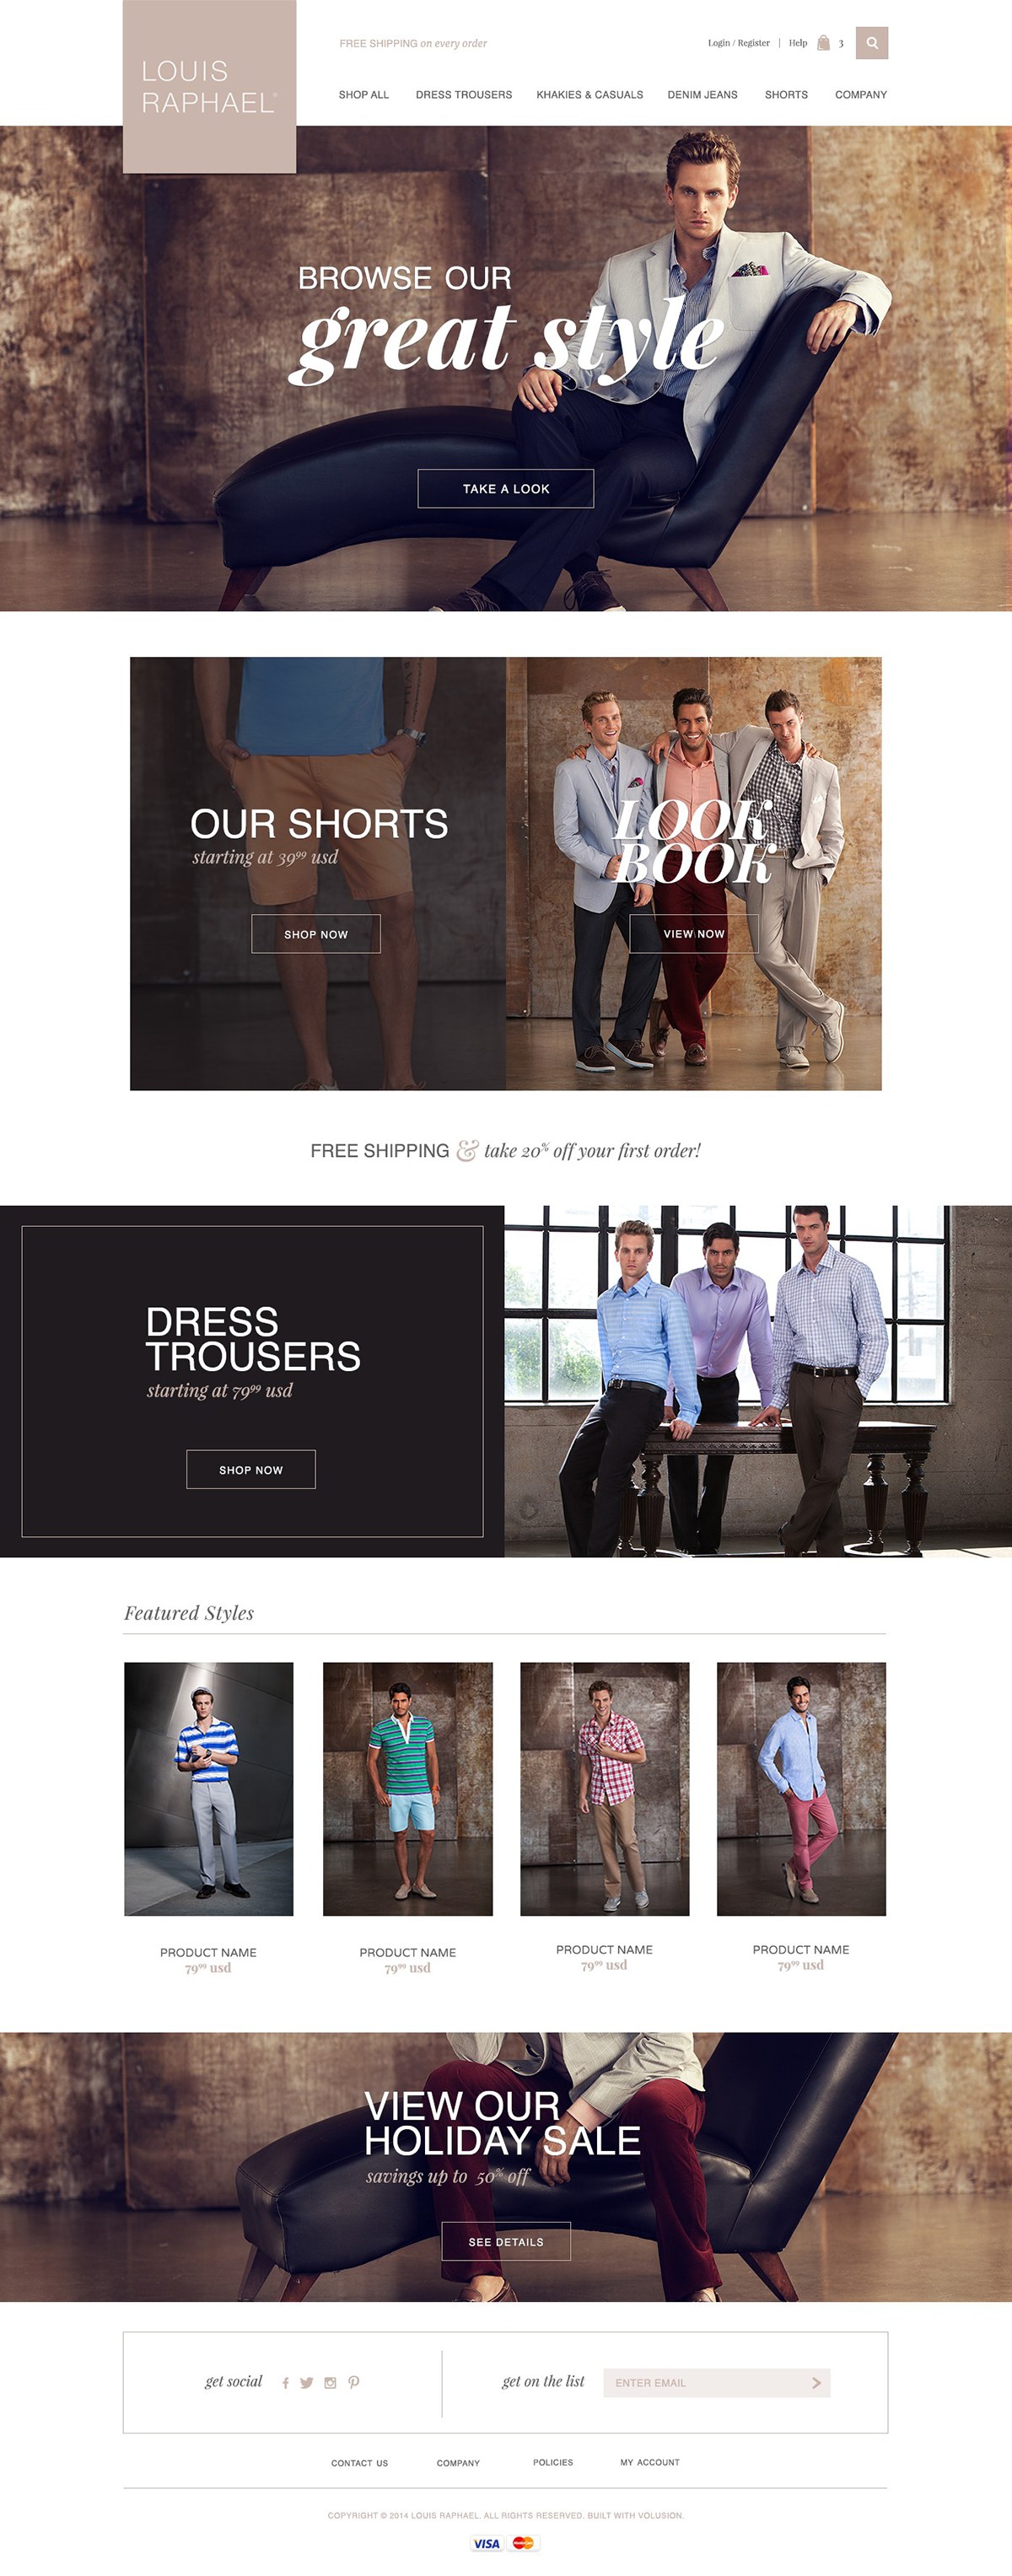 Adobe Portfolio male fashion online store e-commerce homepage design